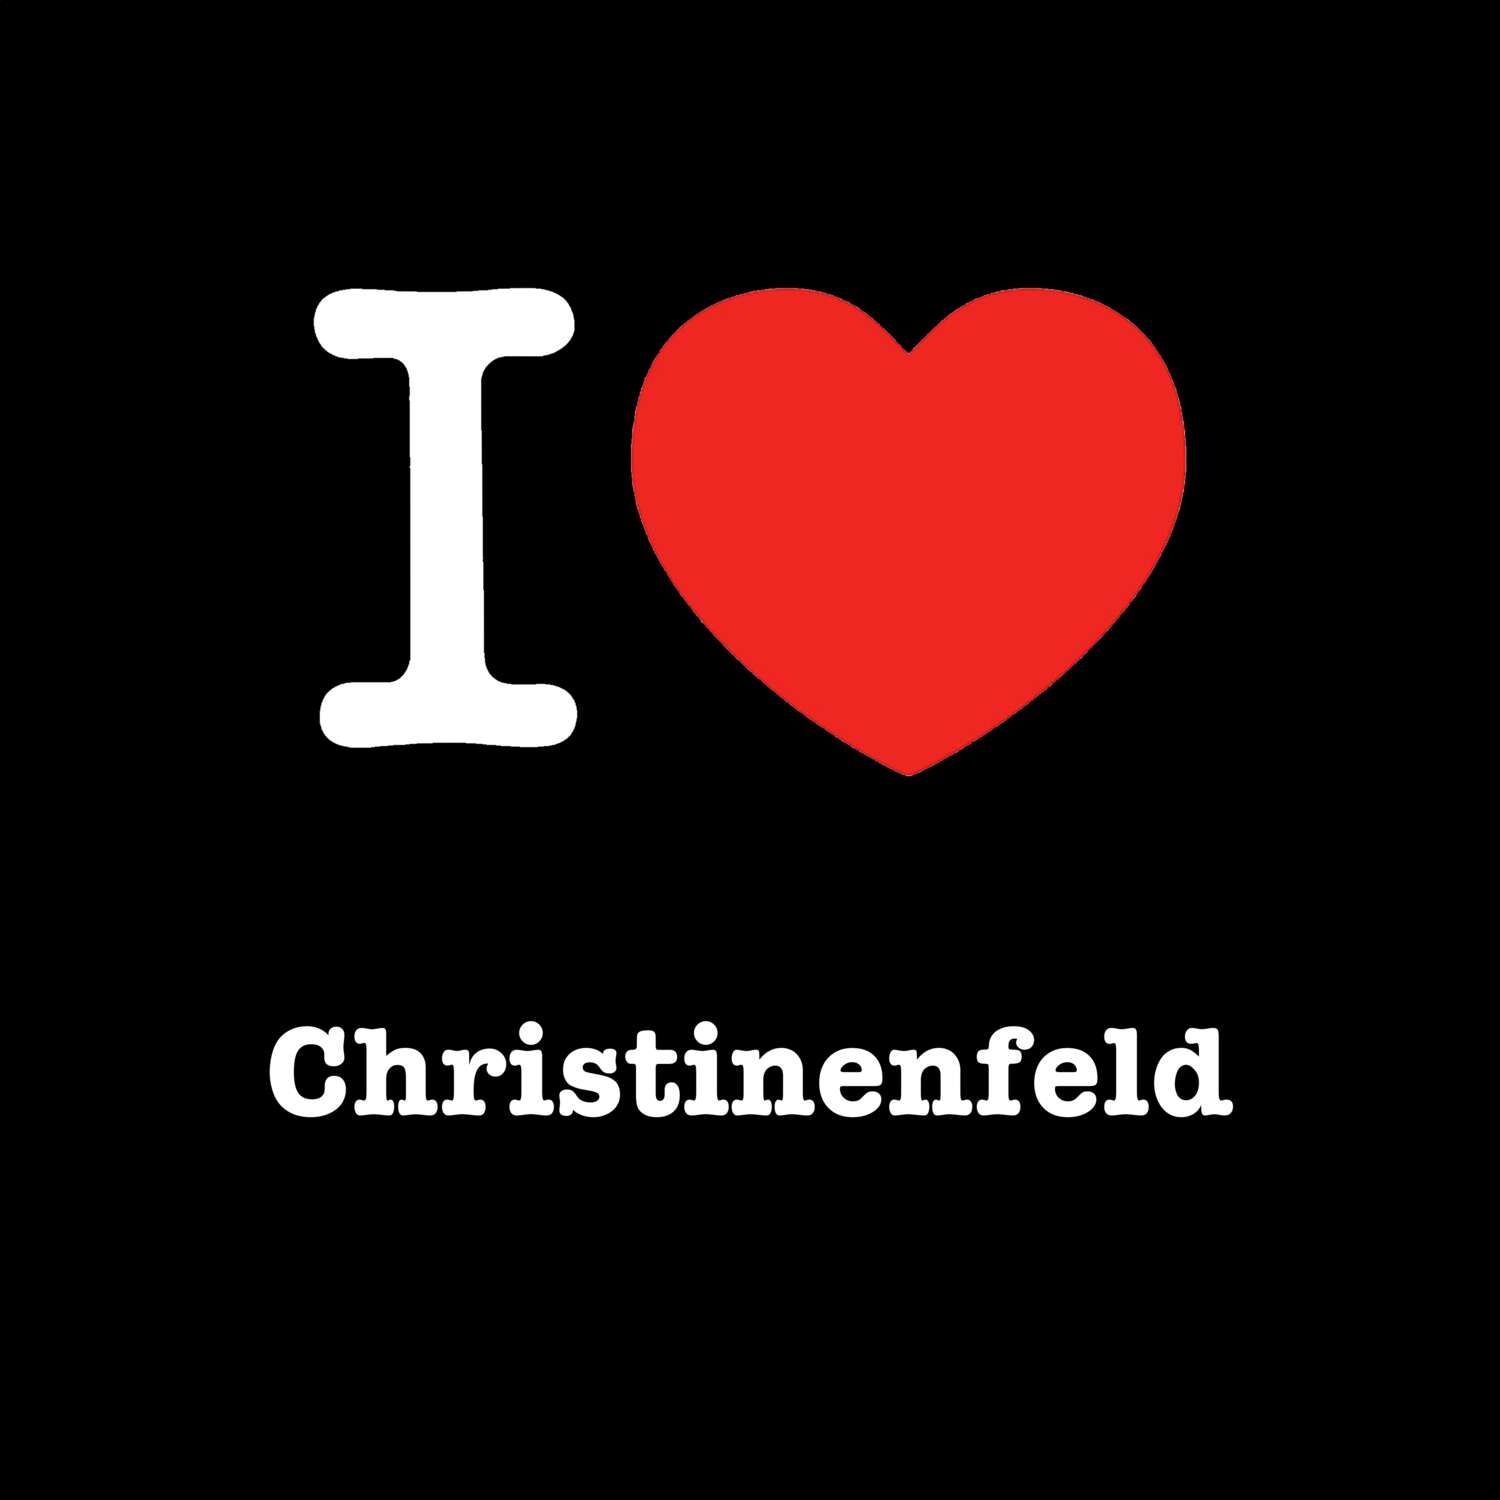 Christinenfeld T-Shirt »I love«